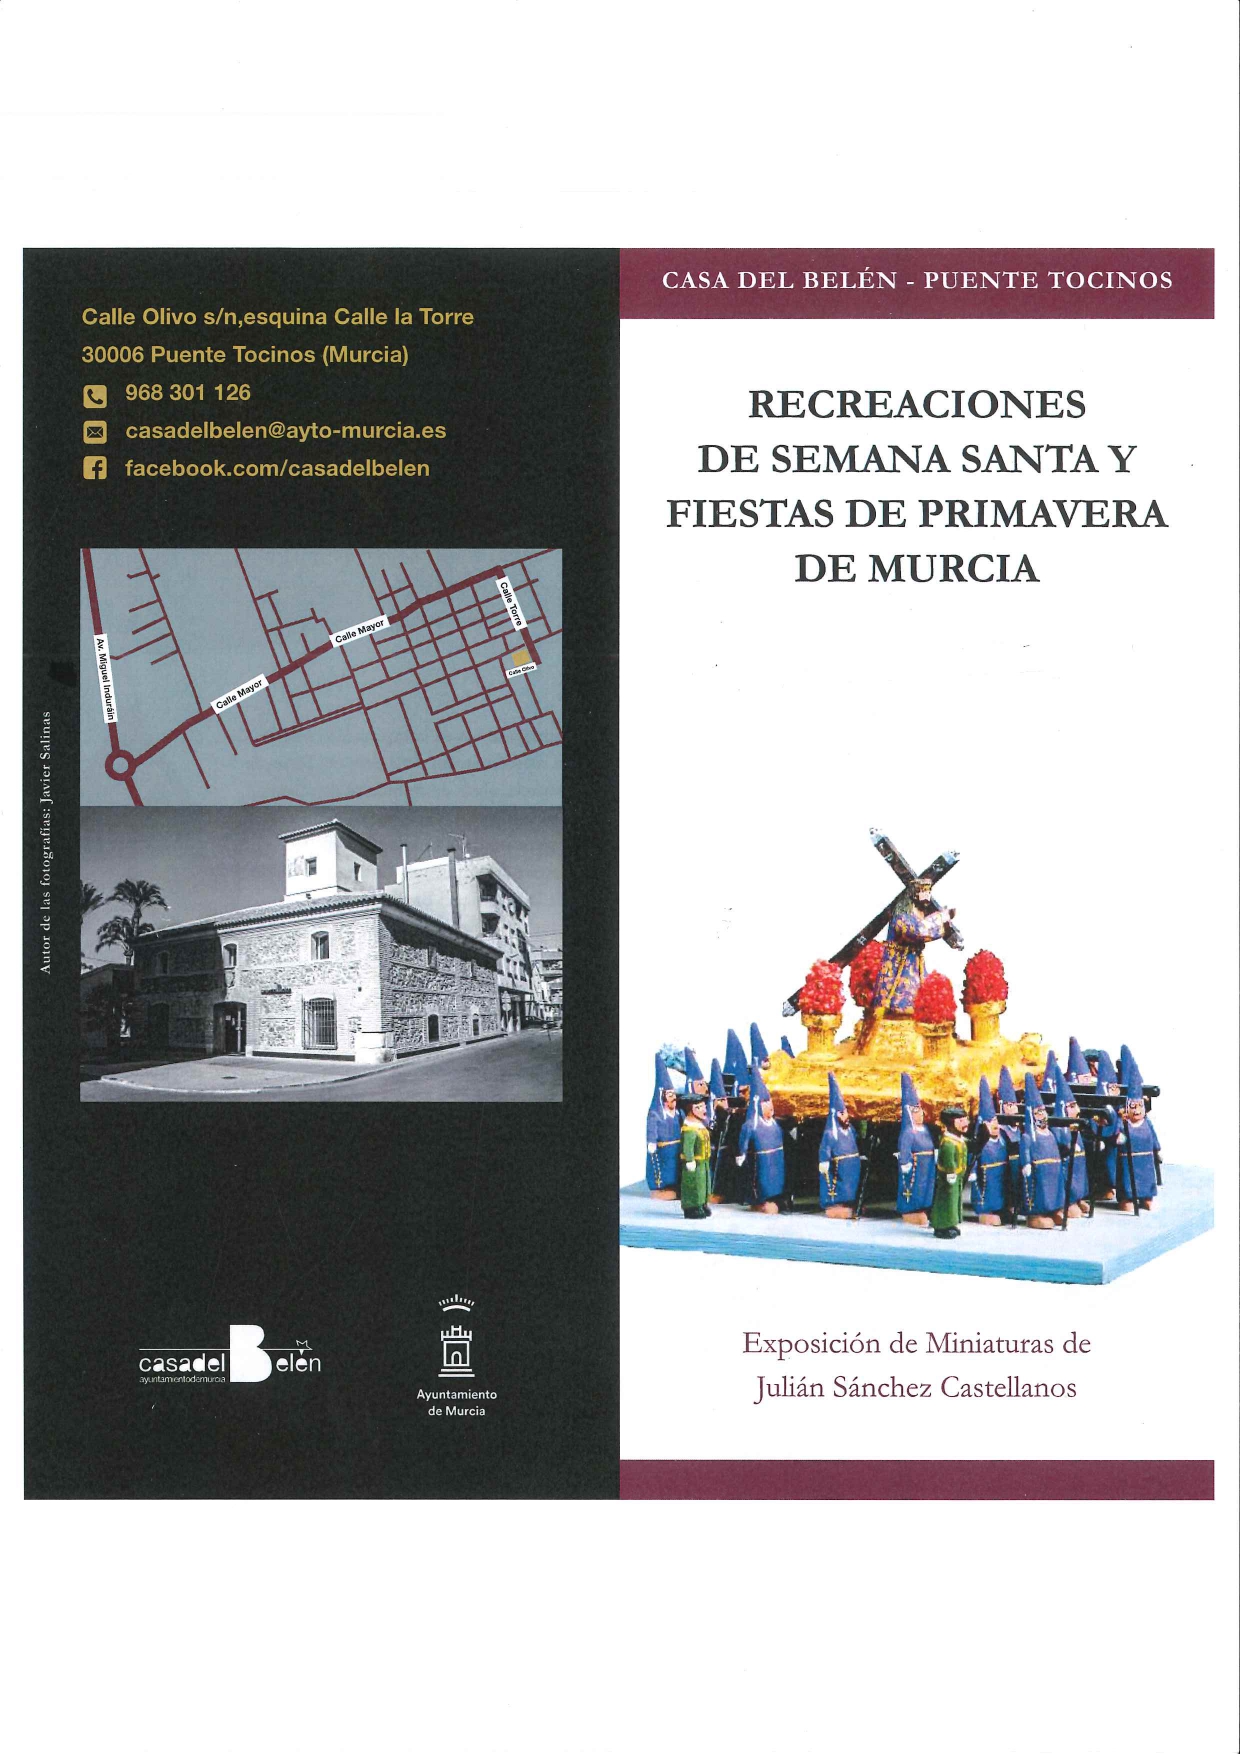 Informacin exposicin Recreaciones de Semana Santa y Fiestas de Primavera de Murcia  Miniaturas de Julin Snchez Castellanos_page-0001.jpg